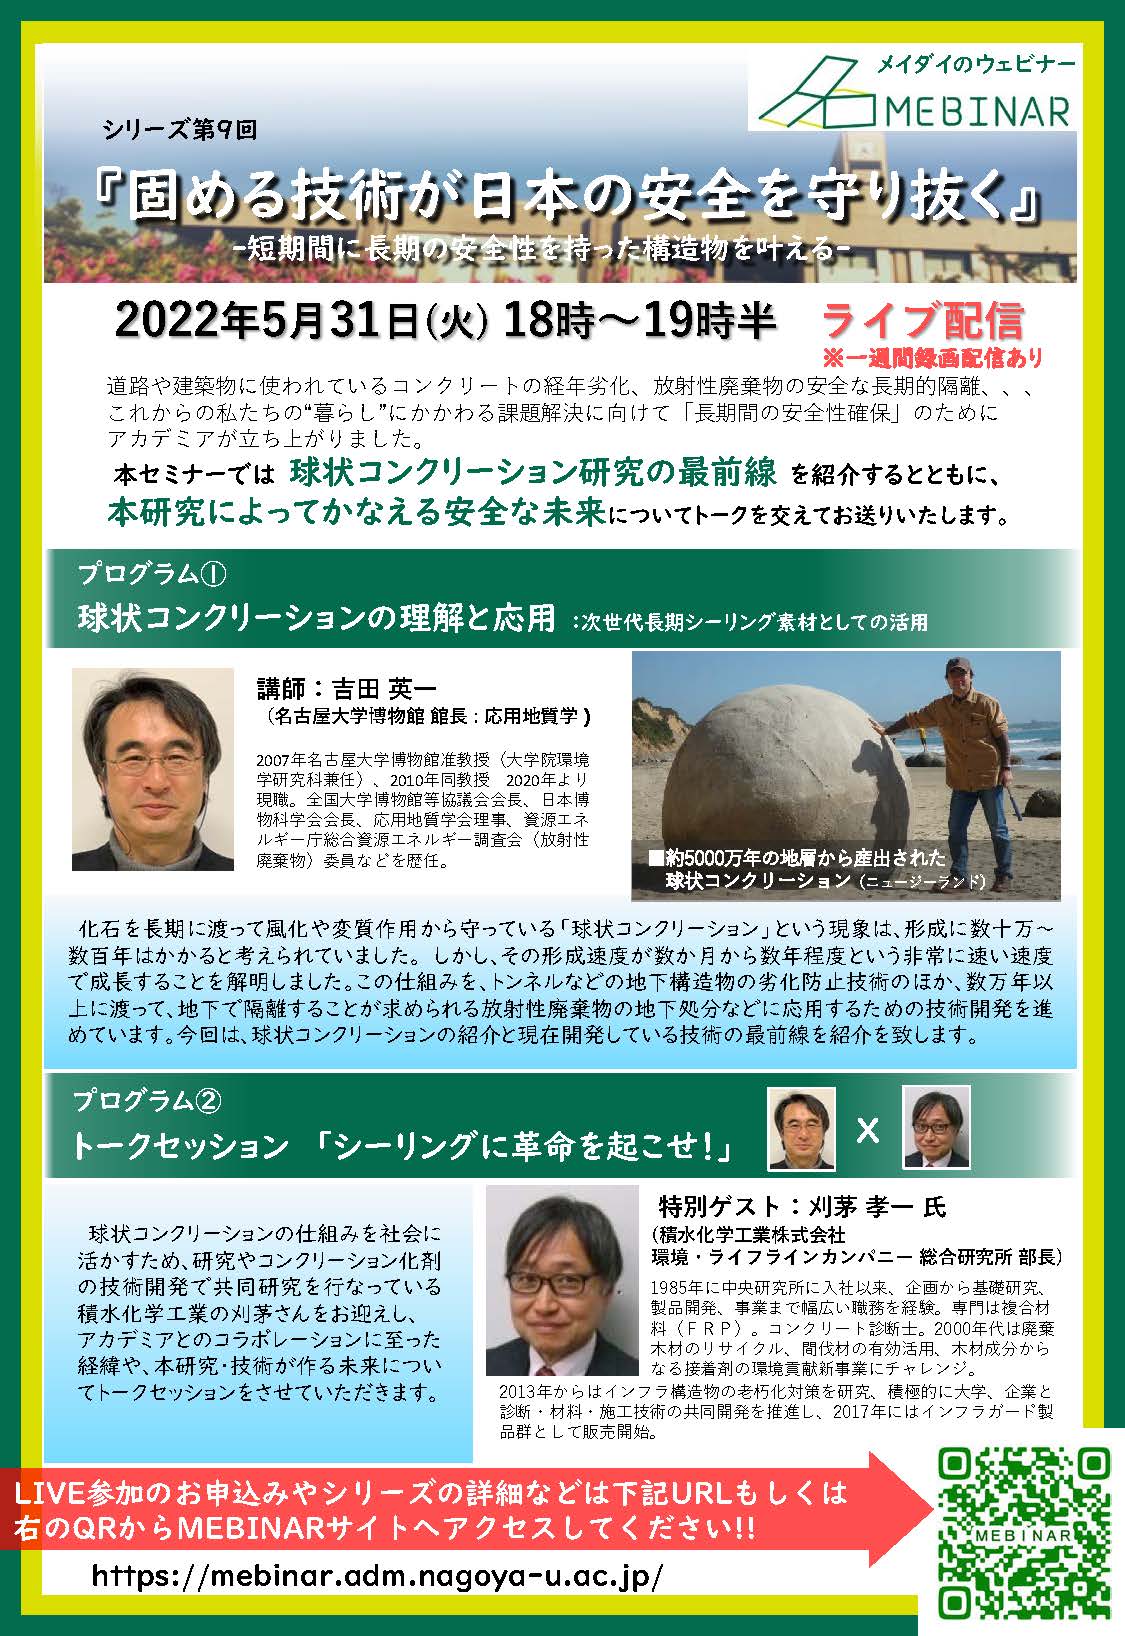 名古屋大学MEBINAR第9回「固める技術が日本の安全を守り抜く- 短期間に長期の安全性を持った構造物を叶える -」